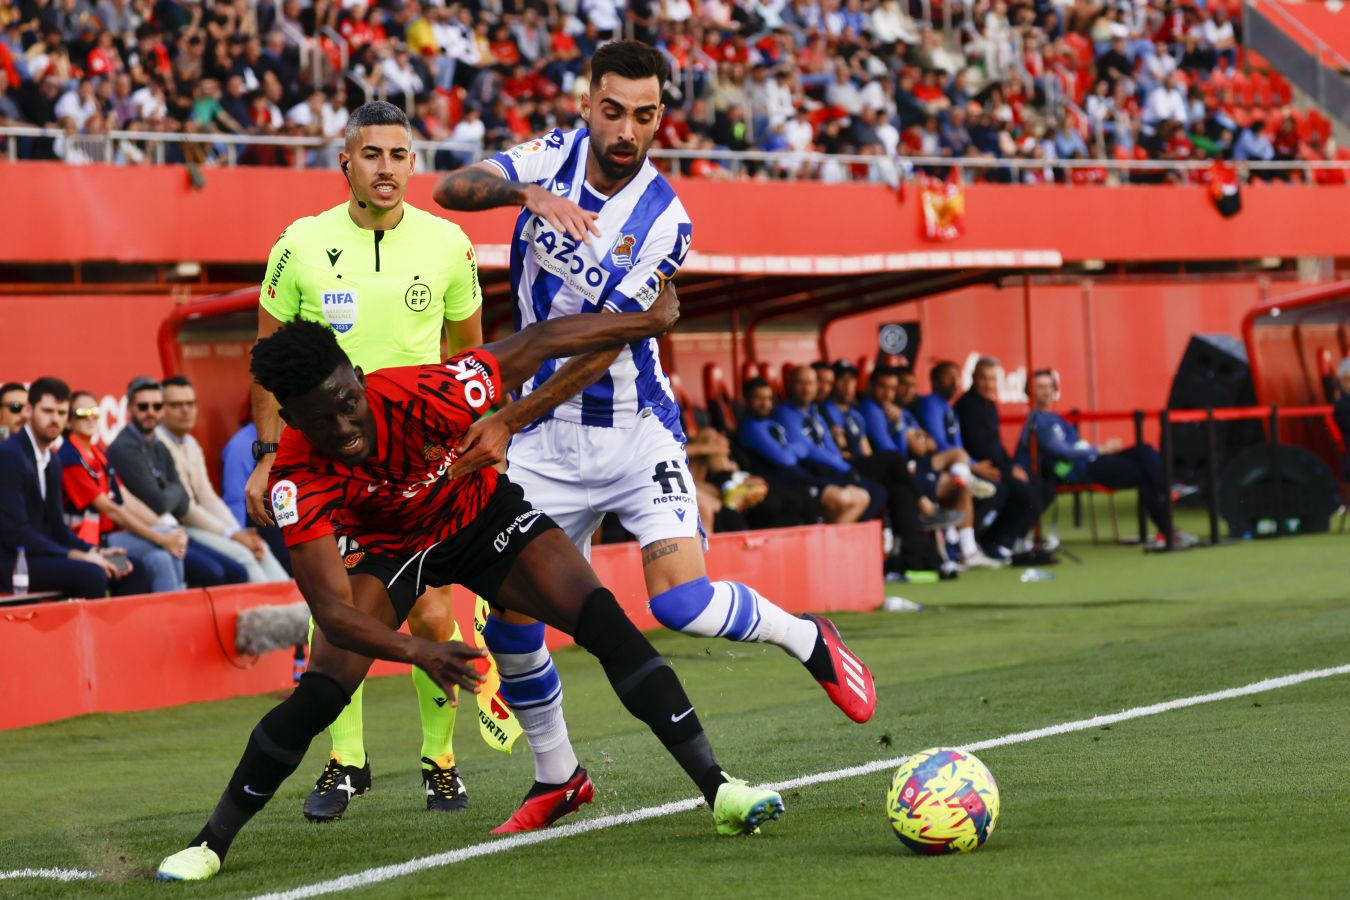 El Mallorca 1 - Real 1, en imágenes